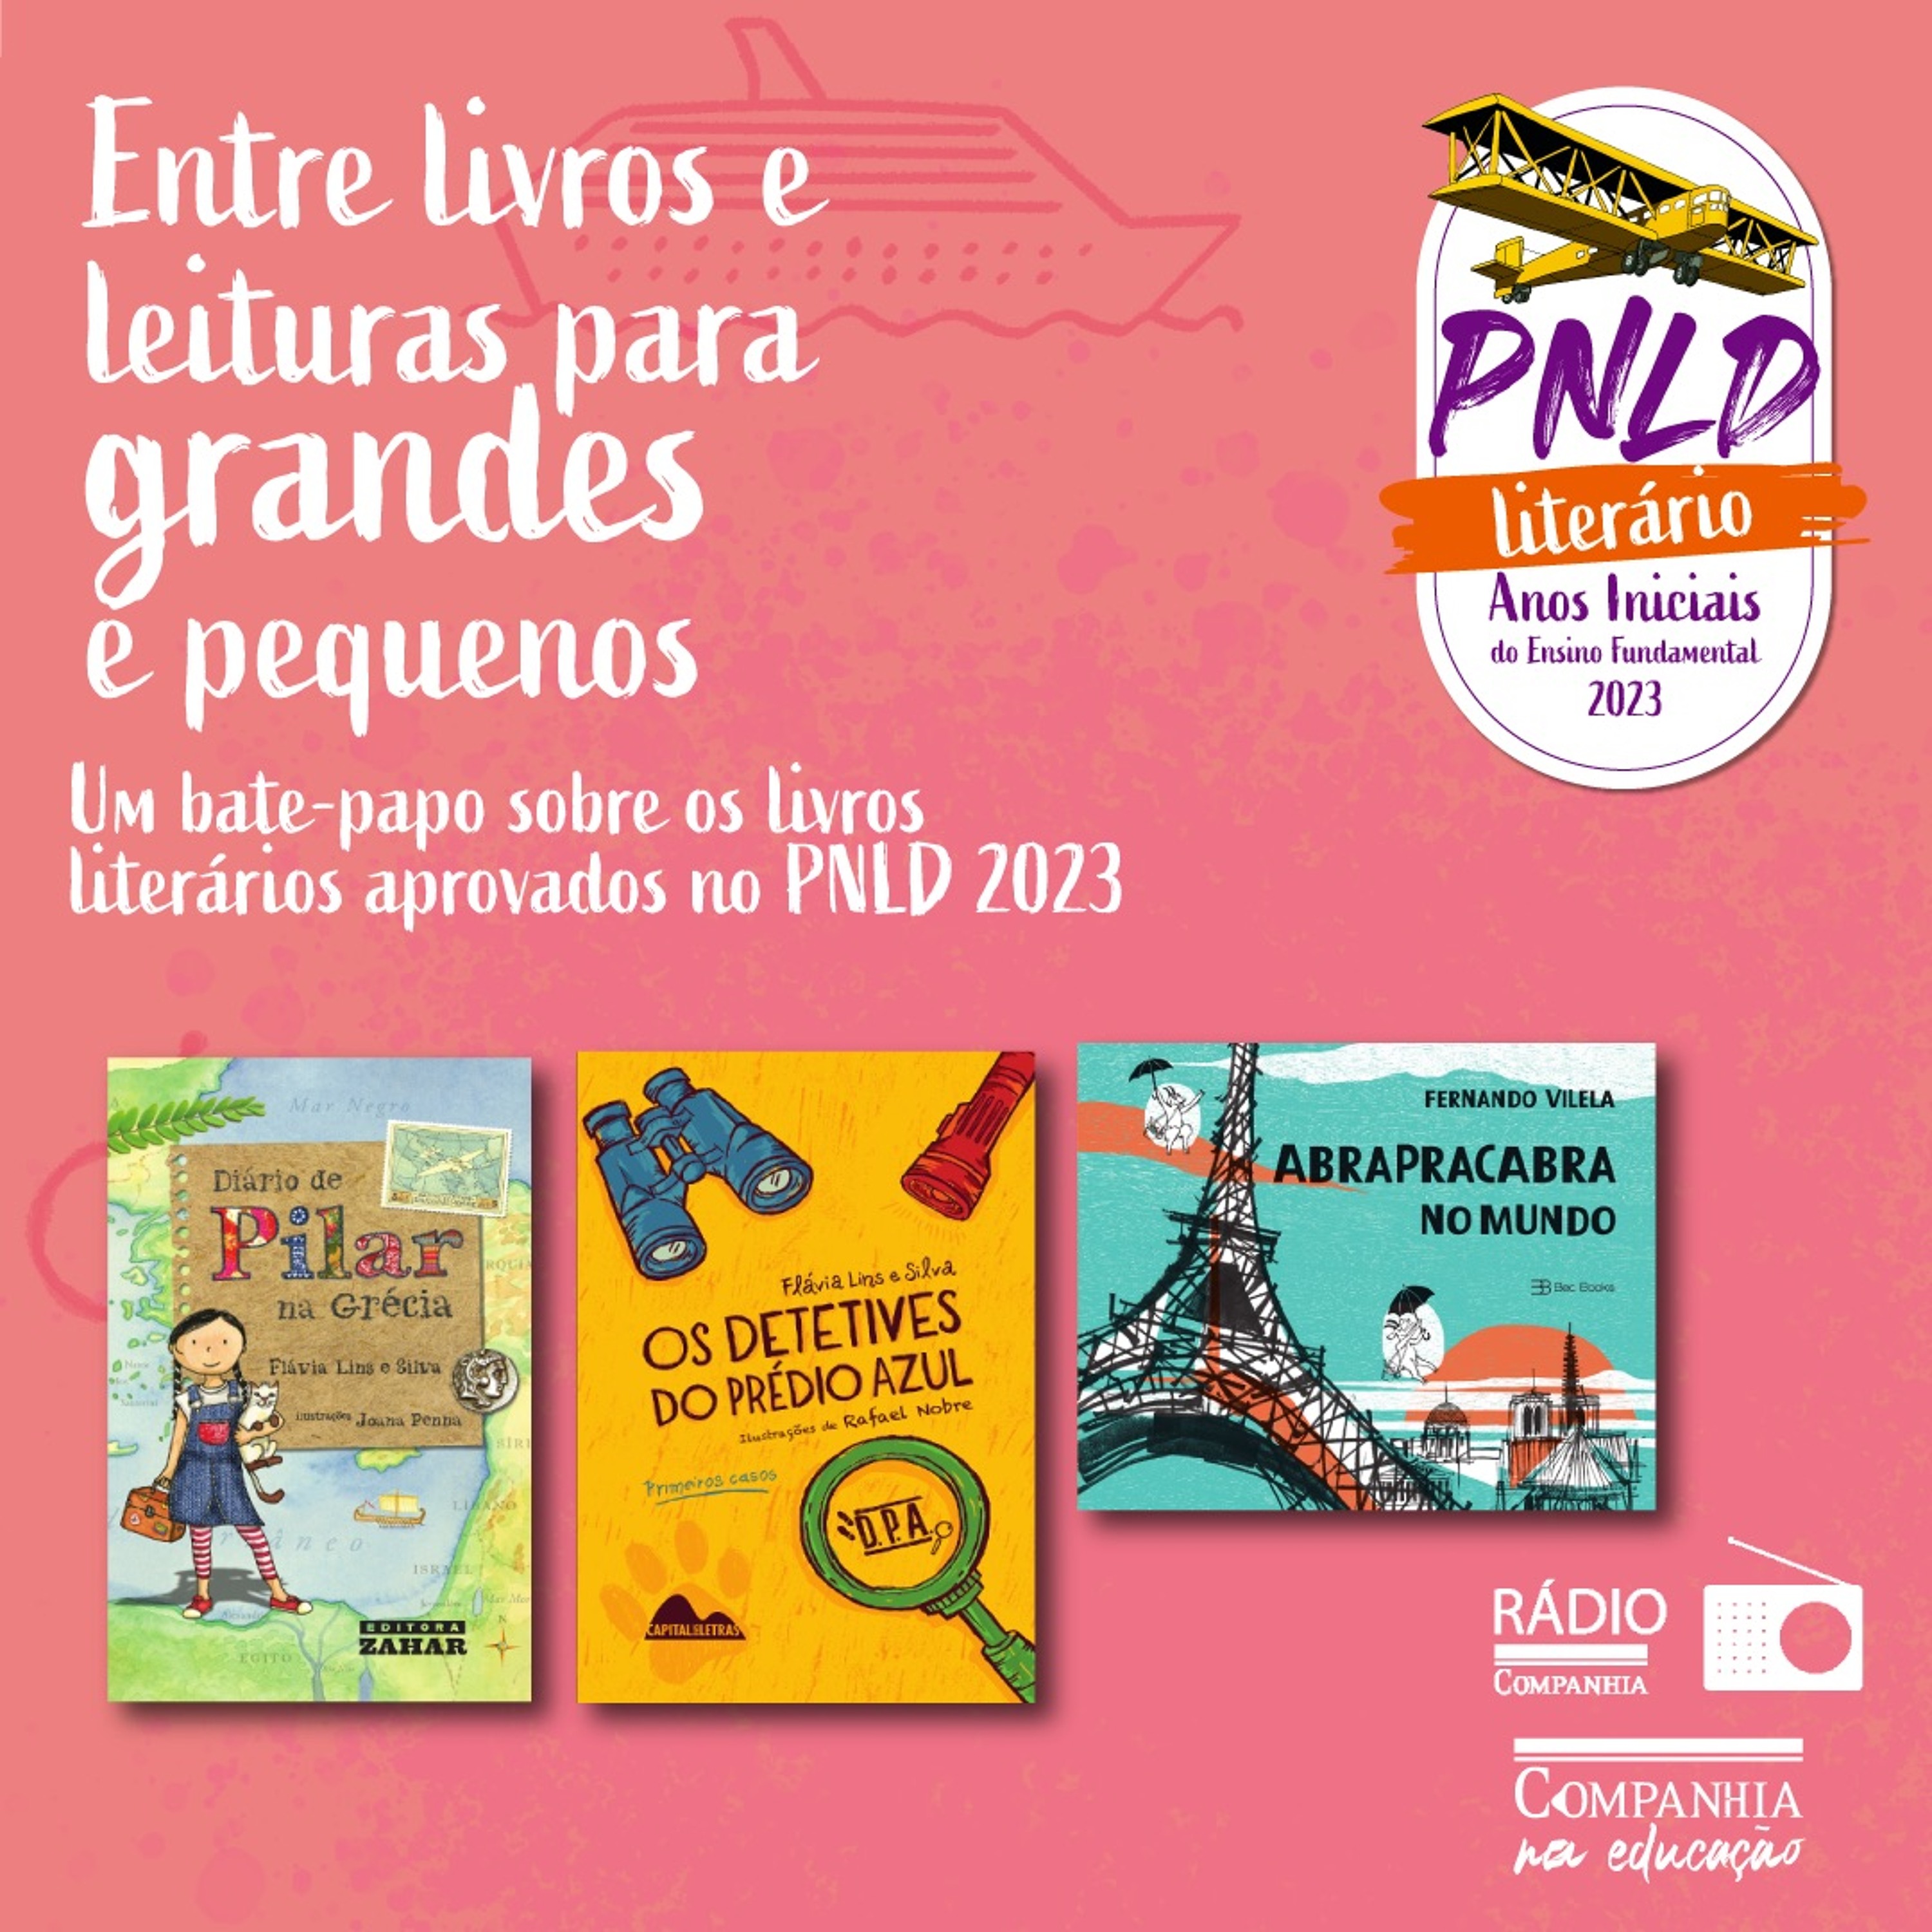 Entre livros e leituras no PNLD Anos Iniciais #002 – “Diário de Pilar”, “Detetives” e “Abrapracabra”